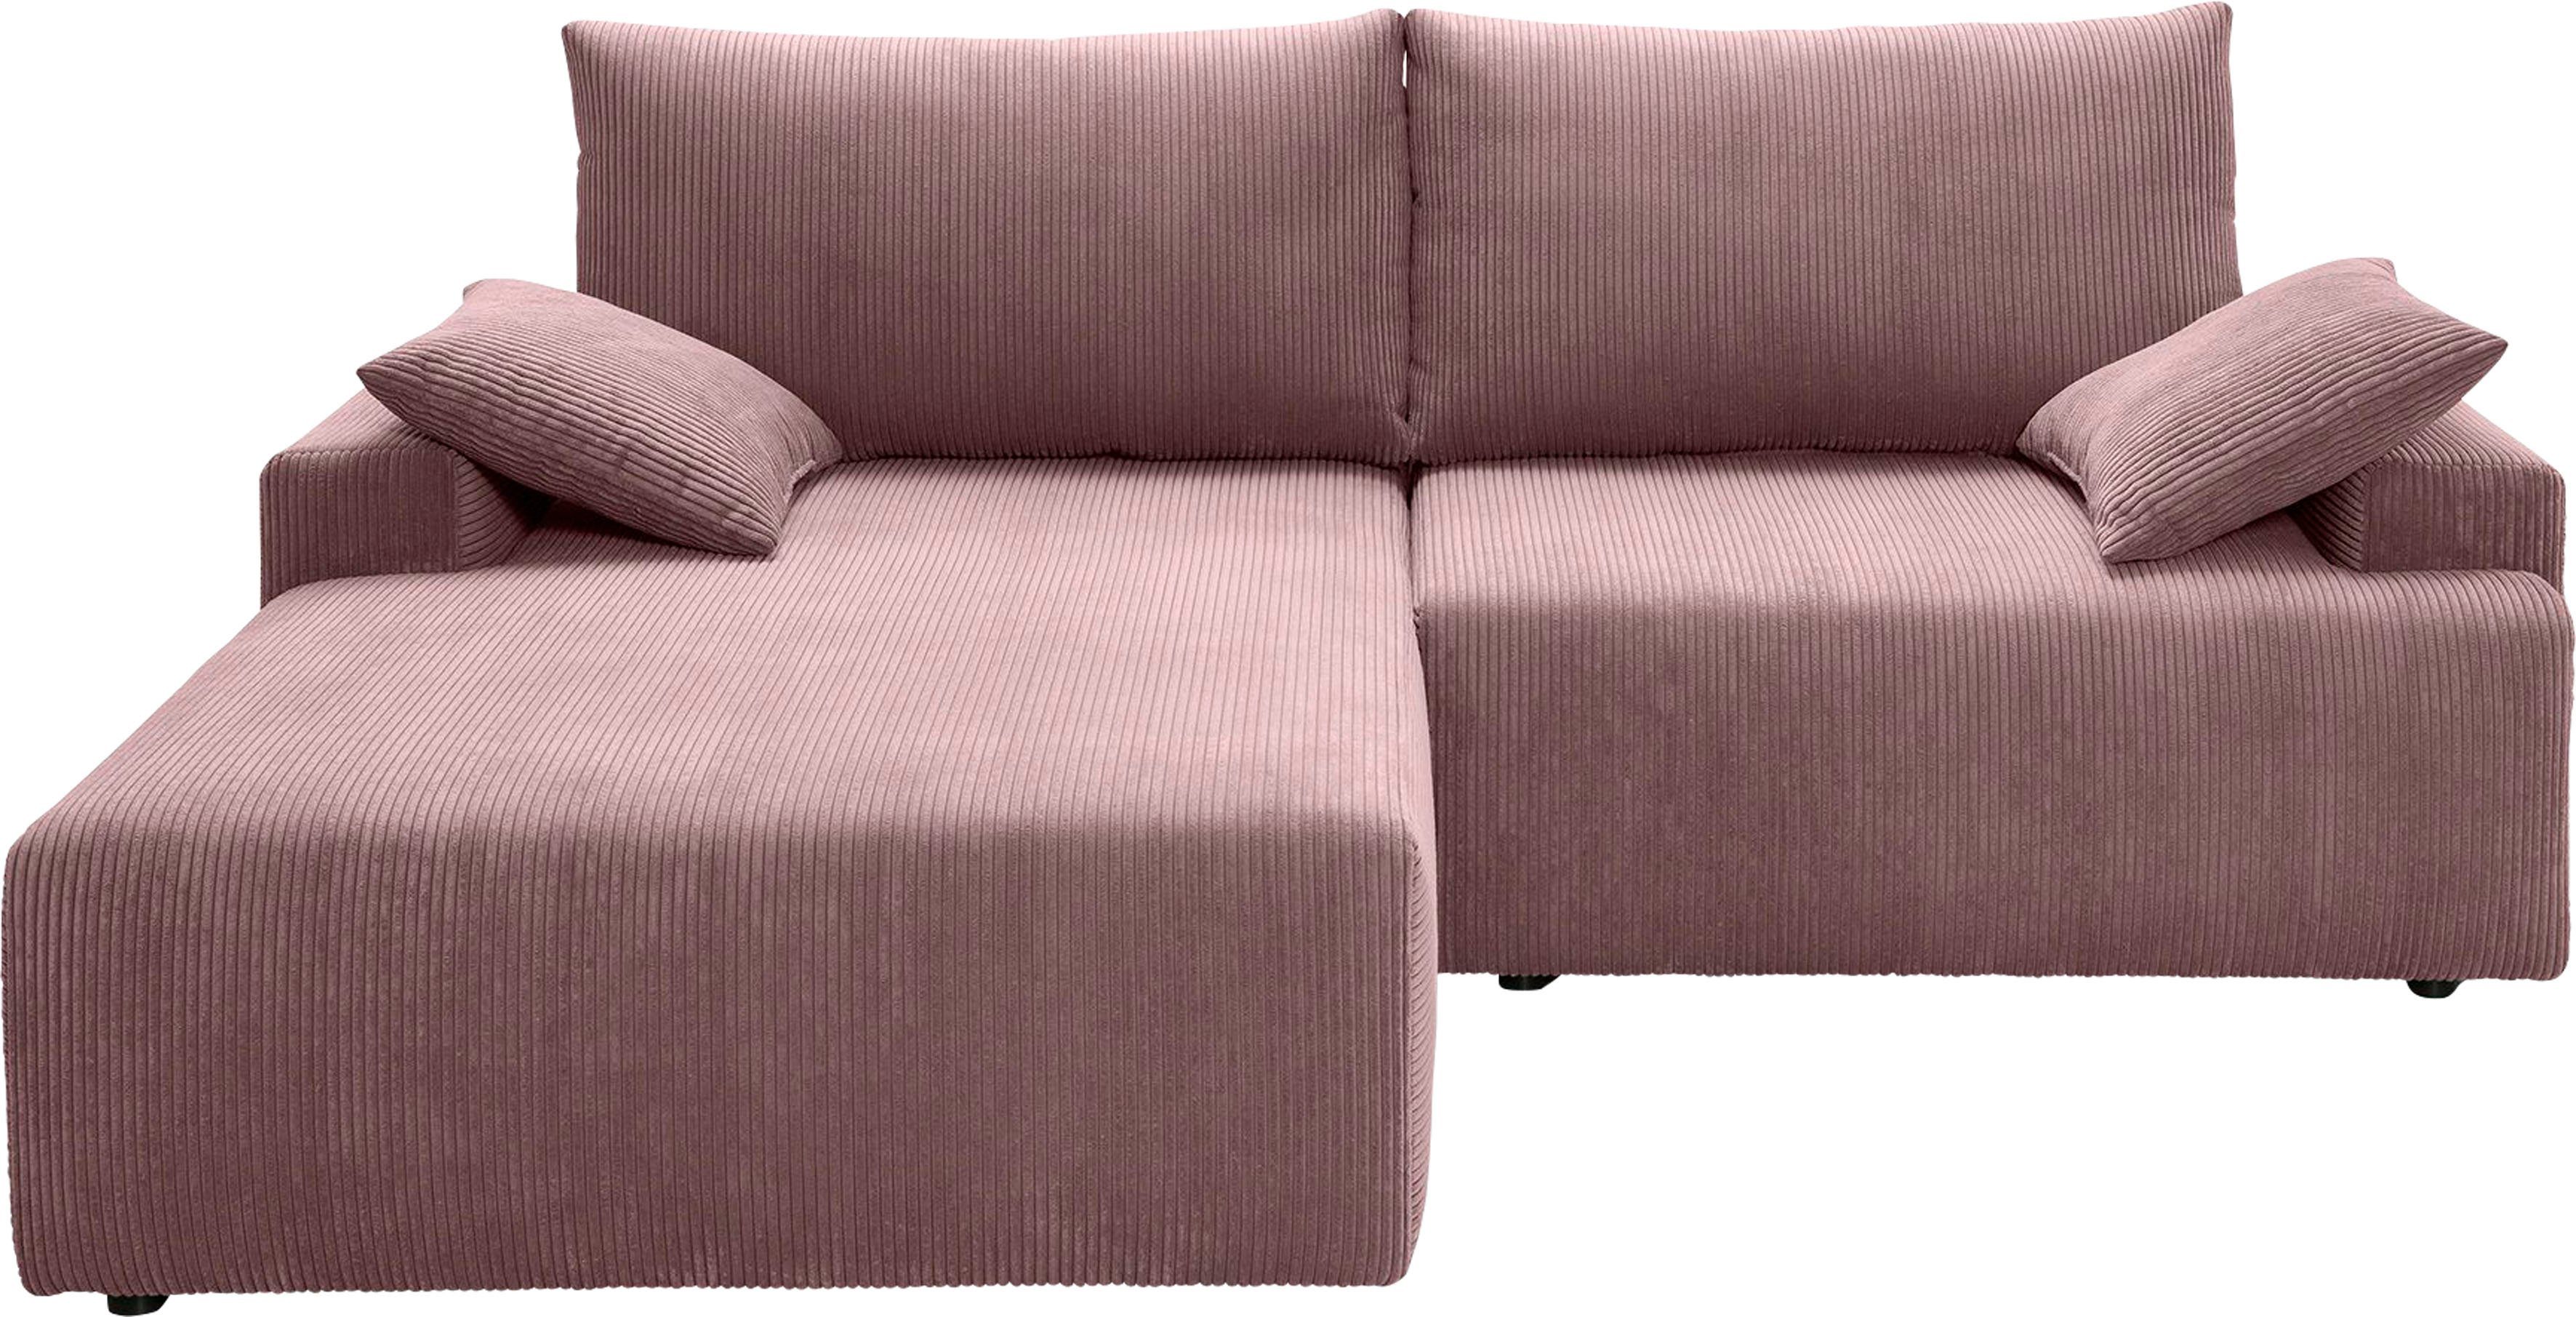 Cord-Farben sofa - Bettkasten fashion inklusive verschiedenen Orinoko, rose in und exxpo Bettfunktion Ecksofa